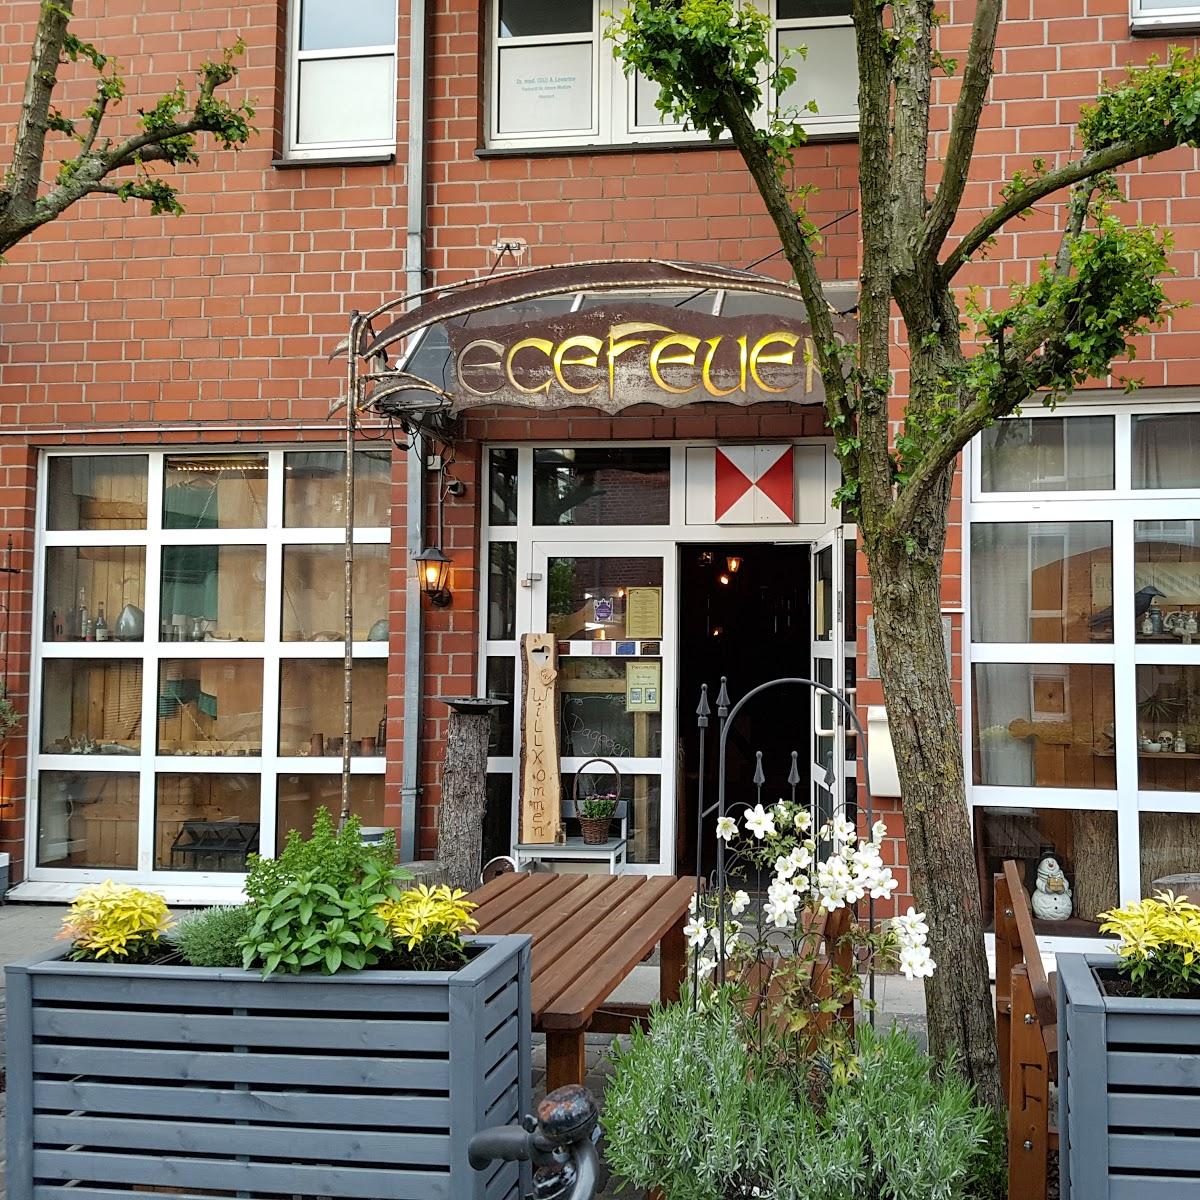 Restaurant "Fegefeuer" in  Münster